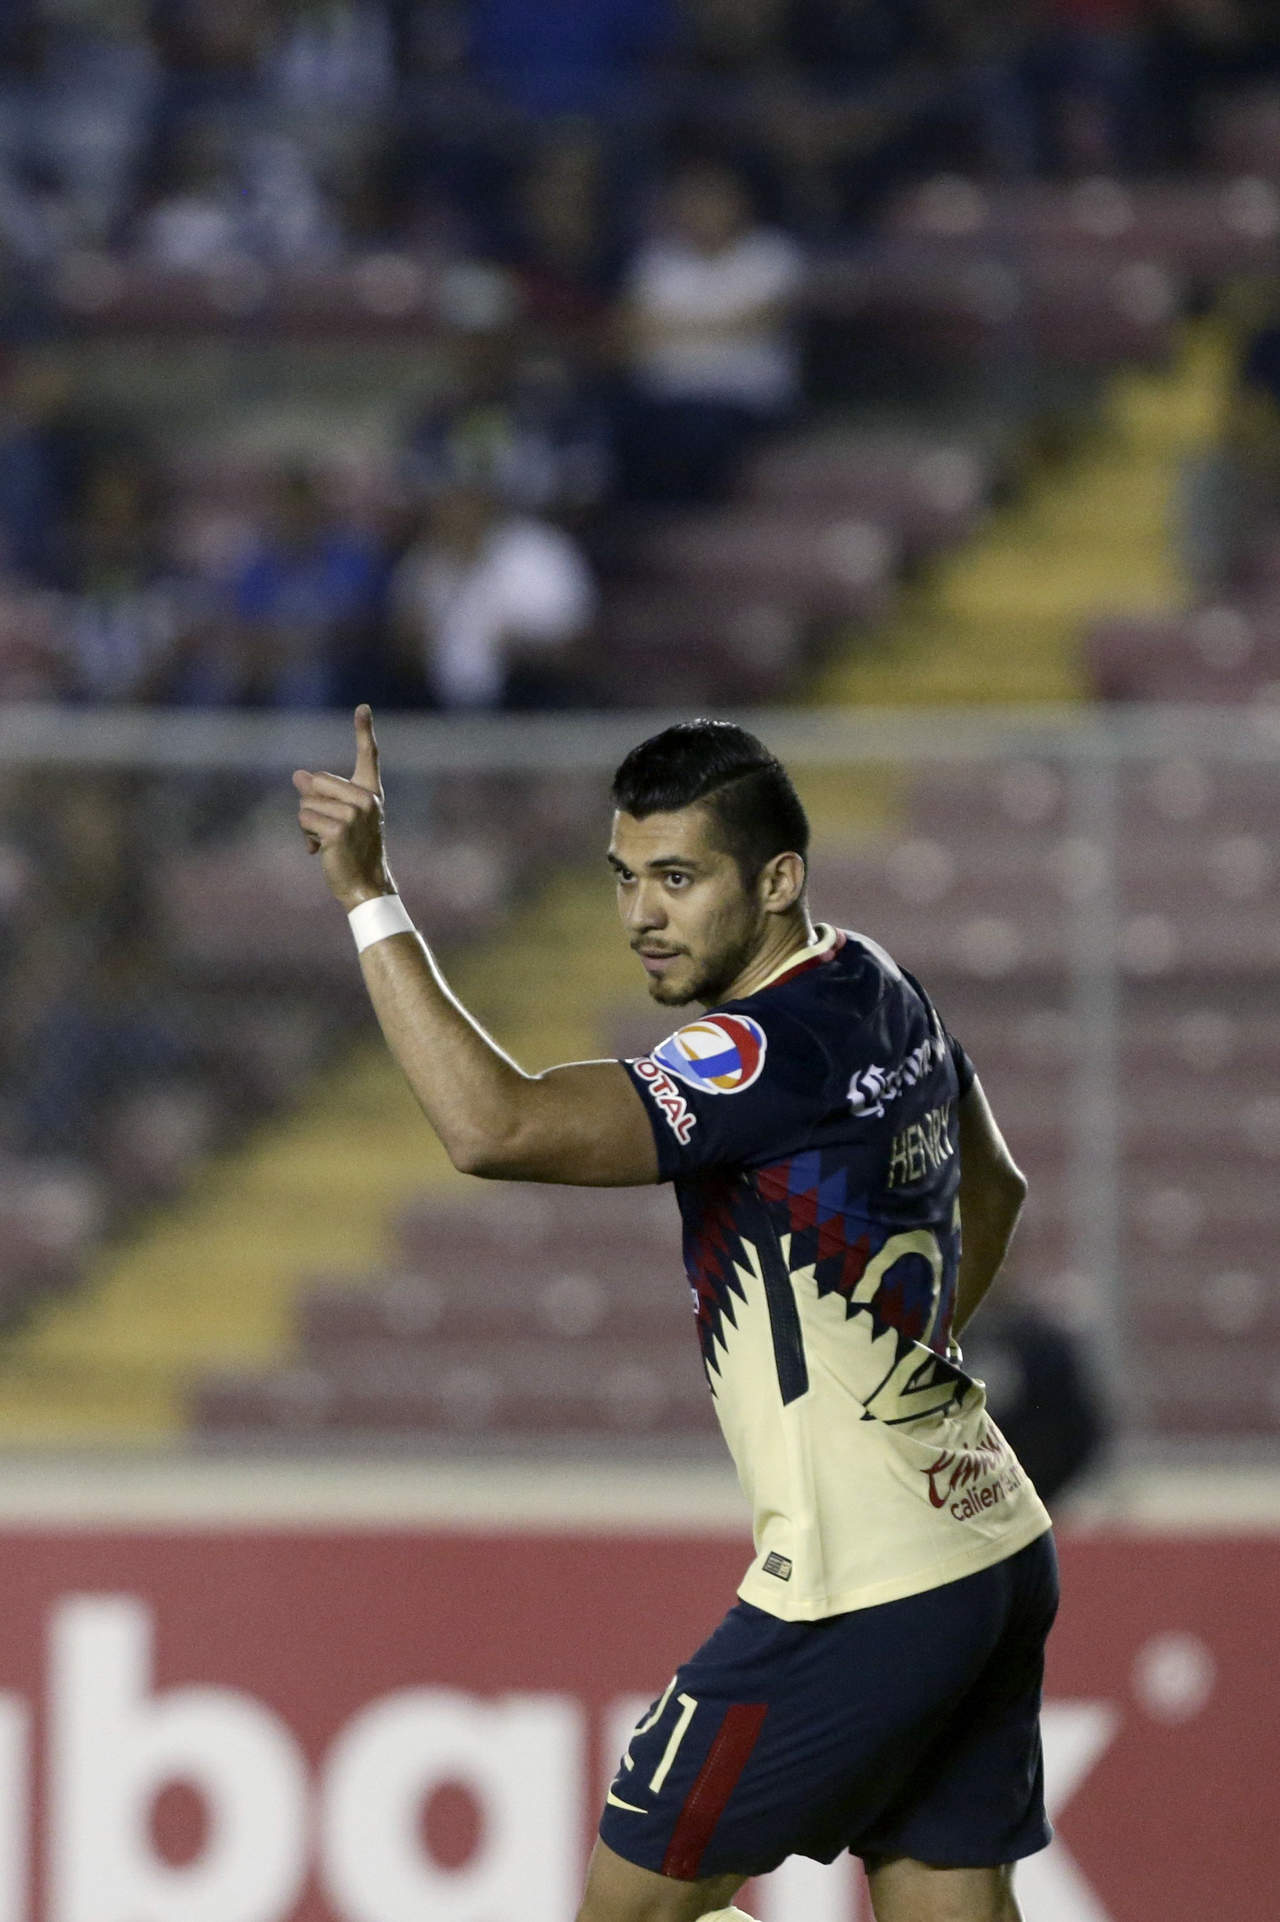 Martín, quien acumula tres goles en el torneo, abrió el marcador a los cinco minutos y agregó un tanto a los 18 para las “Águilas”, que avanzaron a la ronda de los cuatro mejores con un marcador global de 7-1. (ARCHIVO)